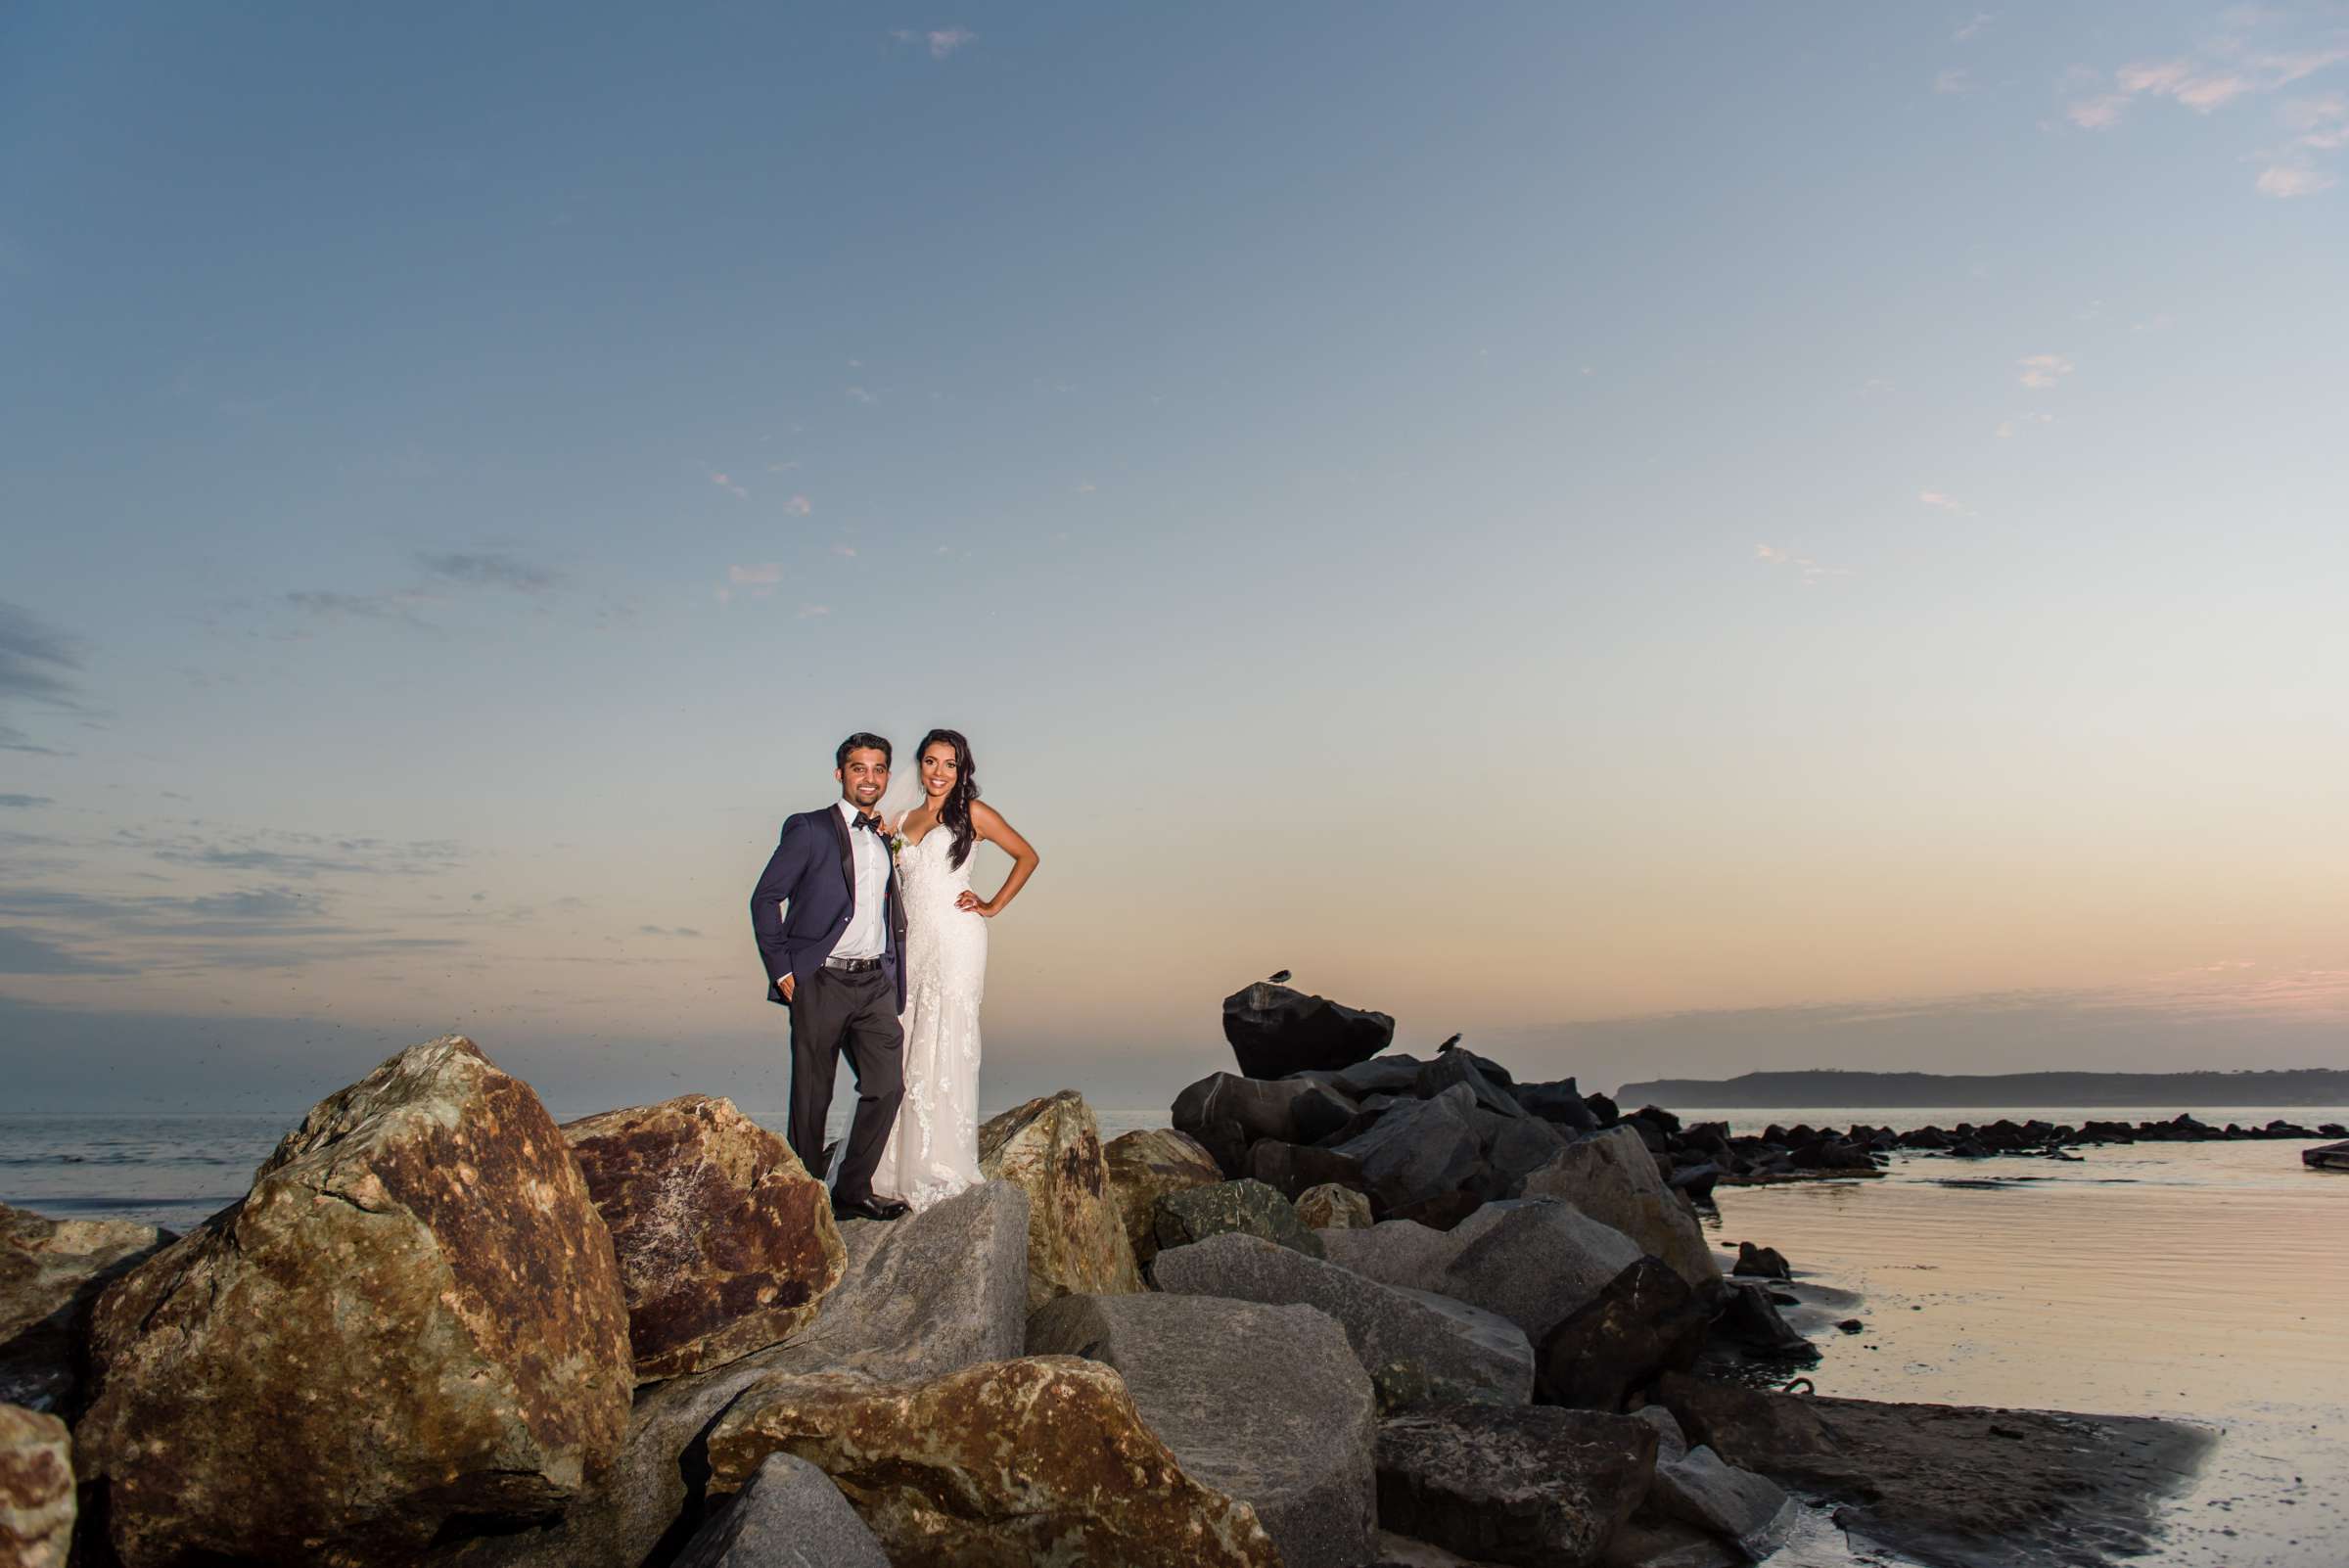 Hotel Del Coronado Wedding, Sabrina and Gehaan Wedding Photo #409068 by True Photography